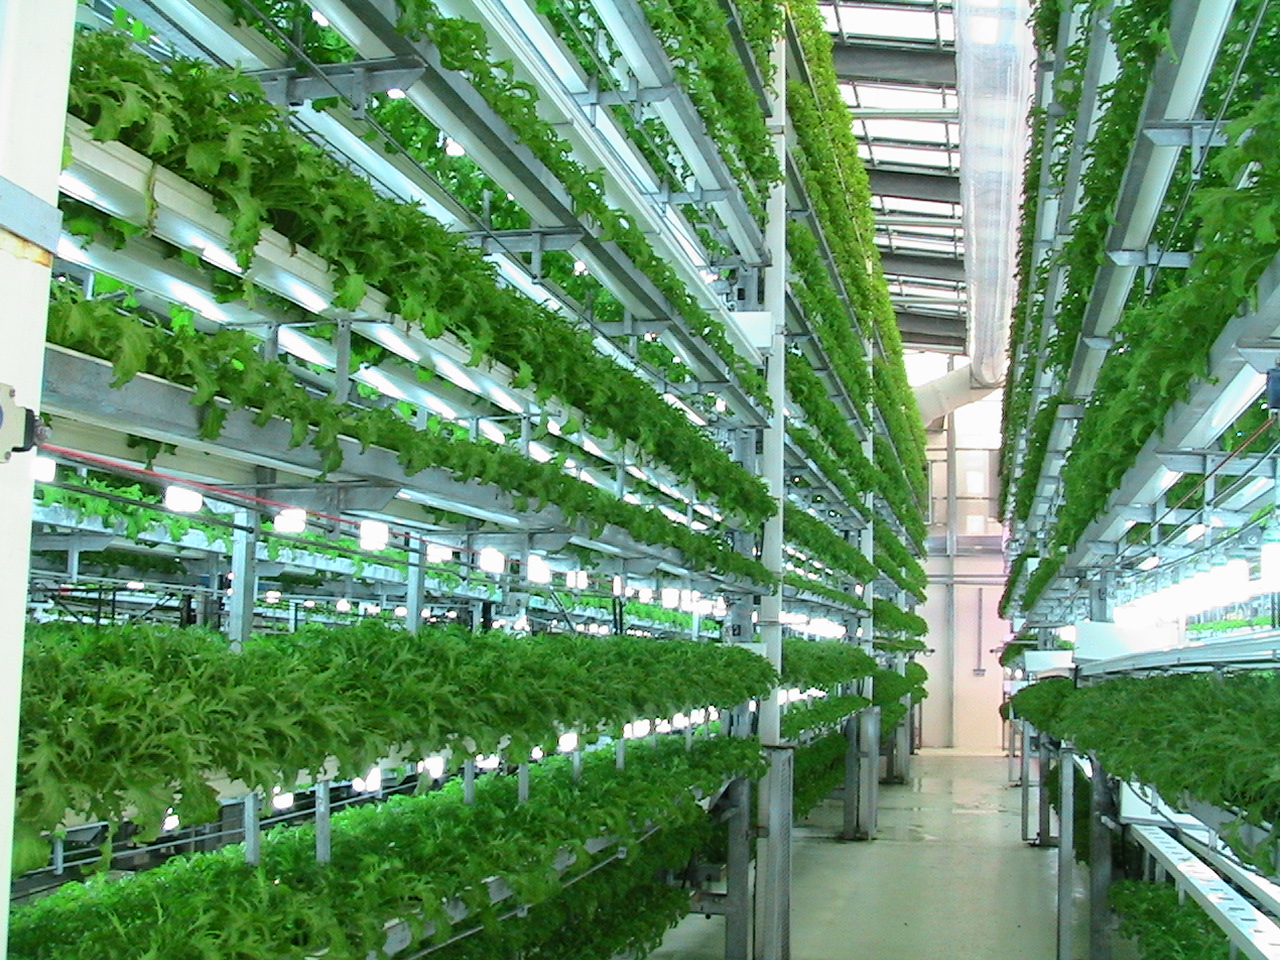 sistem for aquaponic: Aquaponics vegetables hydroponics Learn how